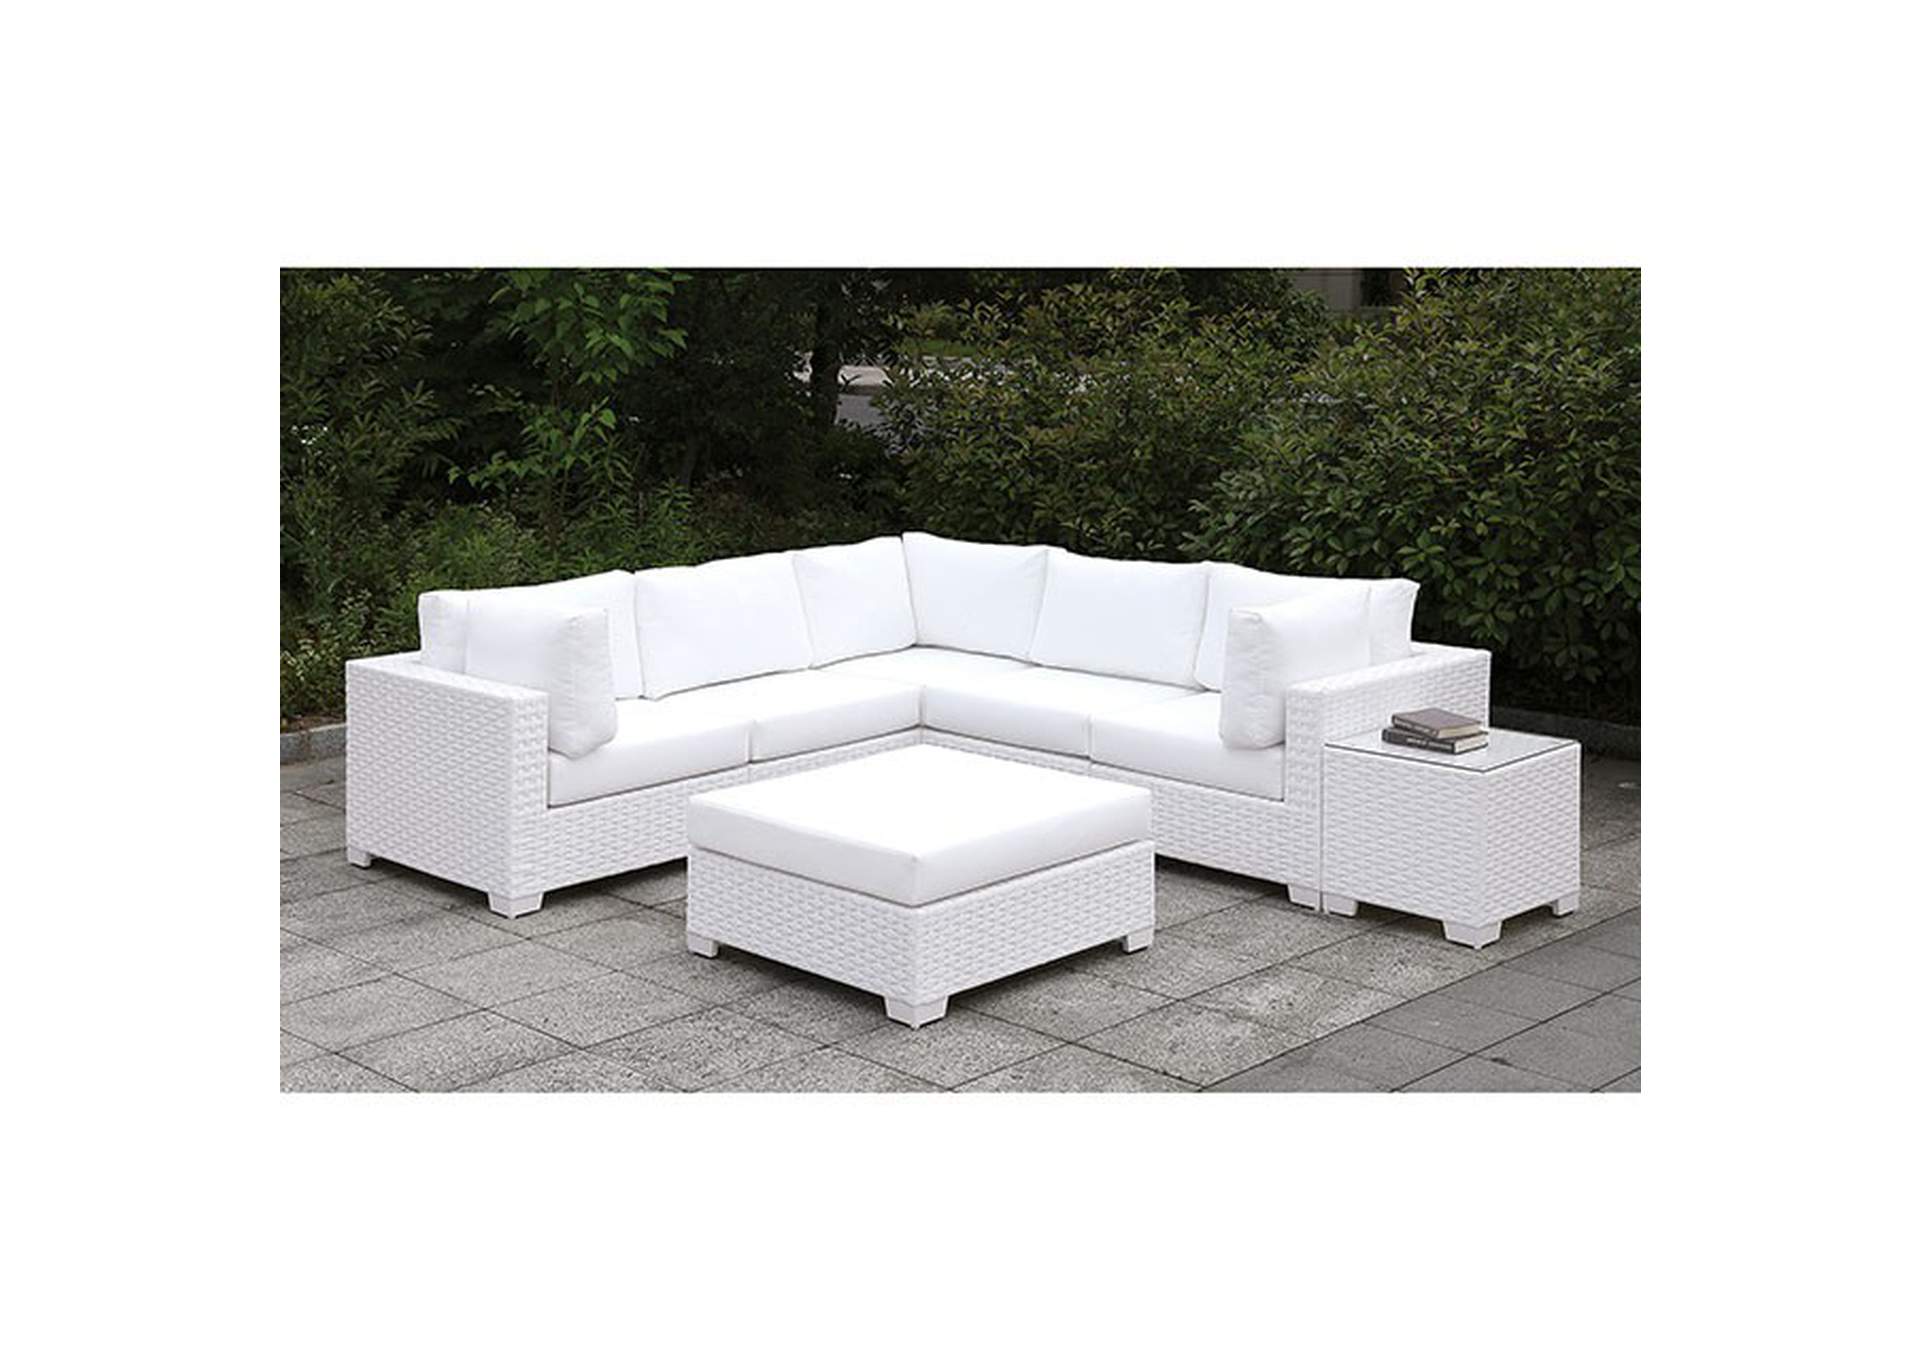 Somani White Chaise,Furniture of America